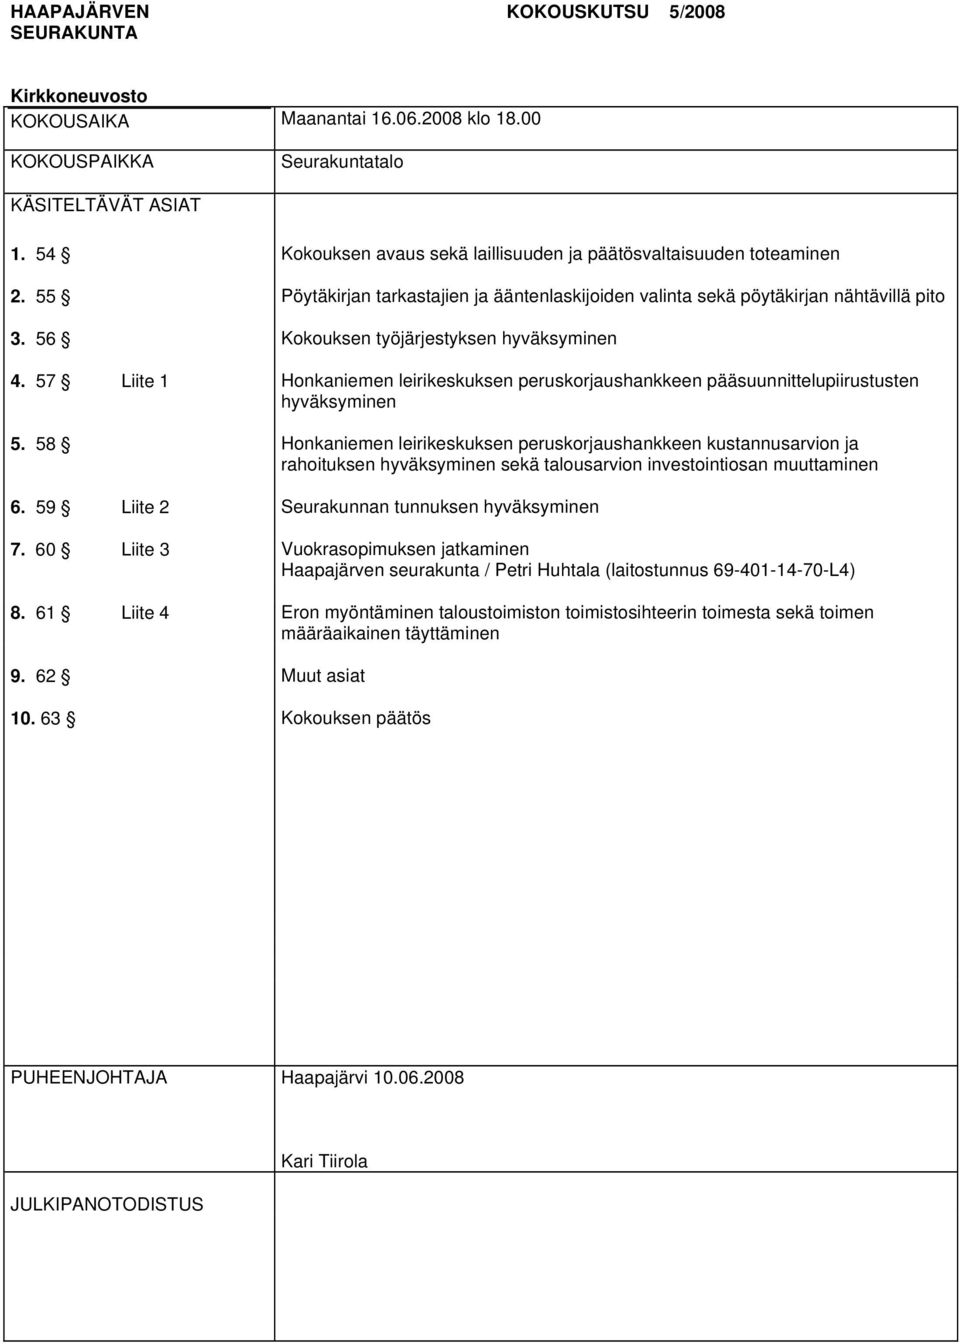 56 Kokouksen työjärjestyksen hyväksyminen 4. 57 Liite 1 Honkaniemen leirikeskuksen peruskorjaushankkeen pääsuunnittelupiirustusten hyväksyminen 5.